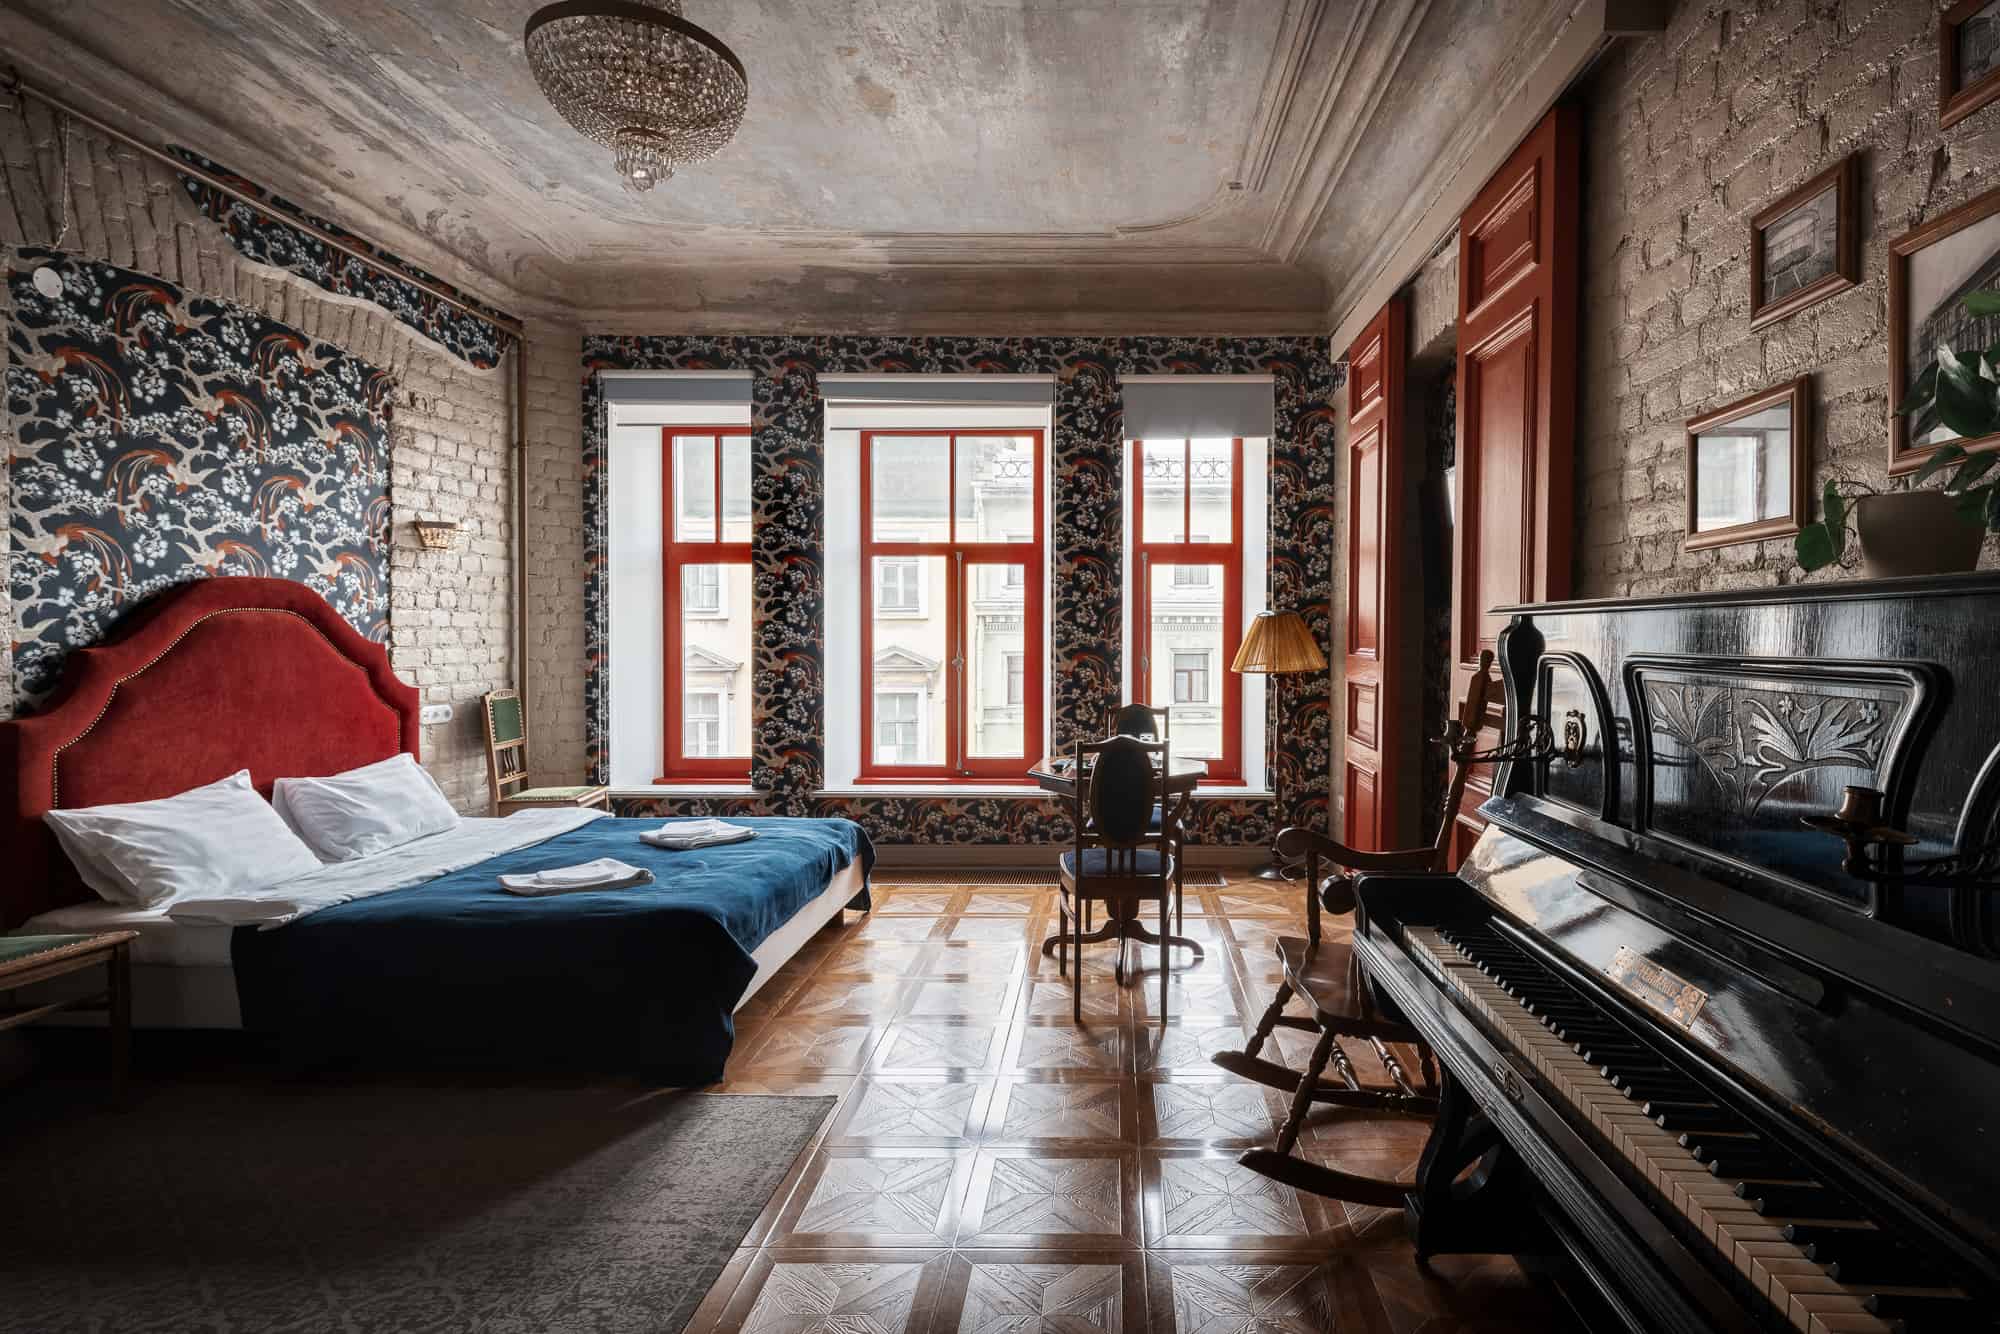 Большая кровать, пианино, кресло-качалка и три окна на все стену.